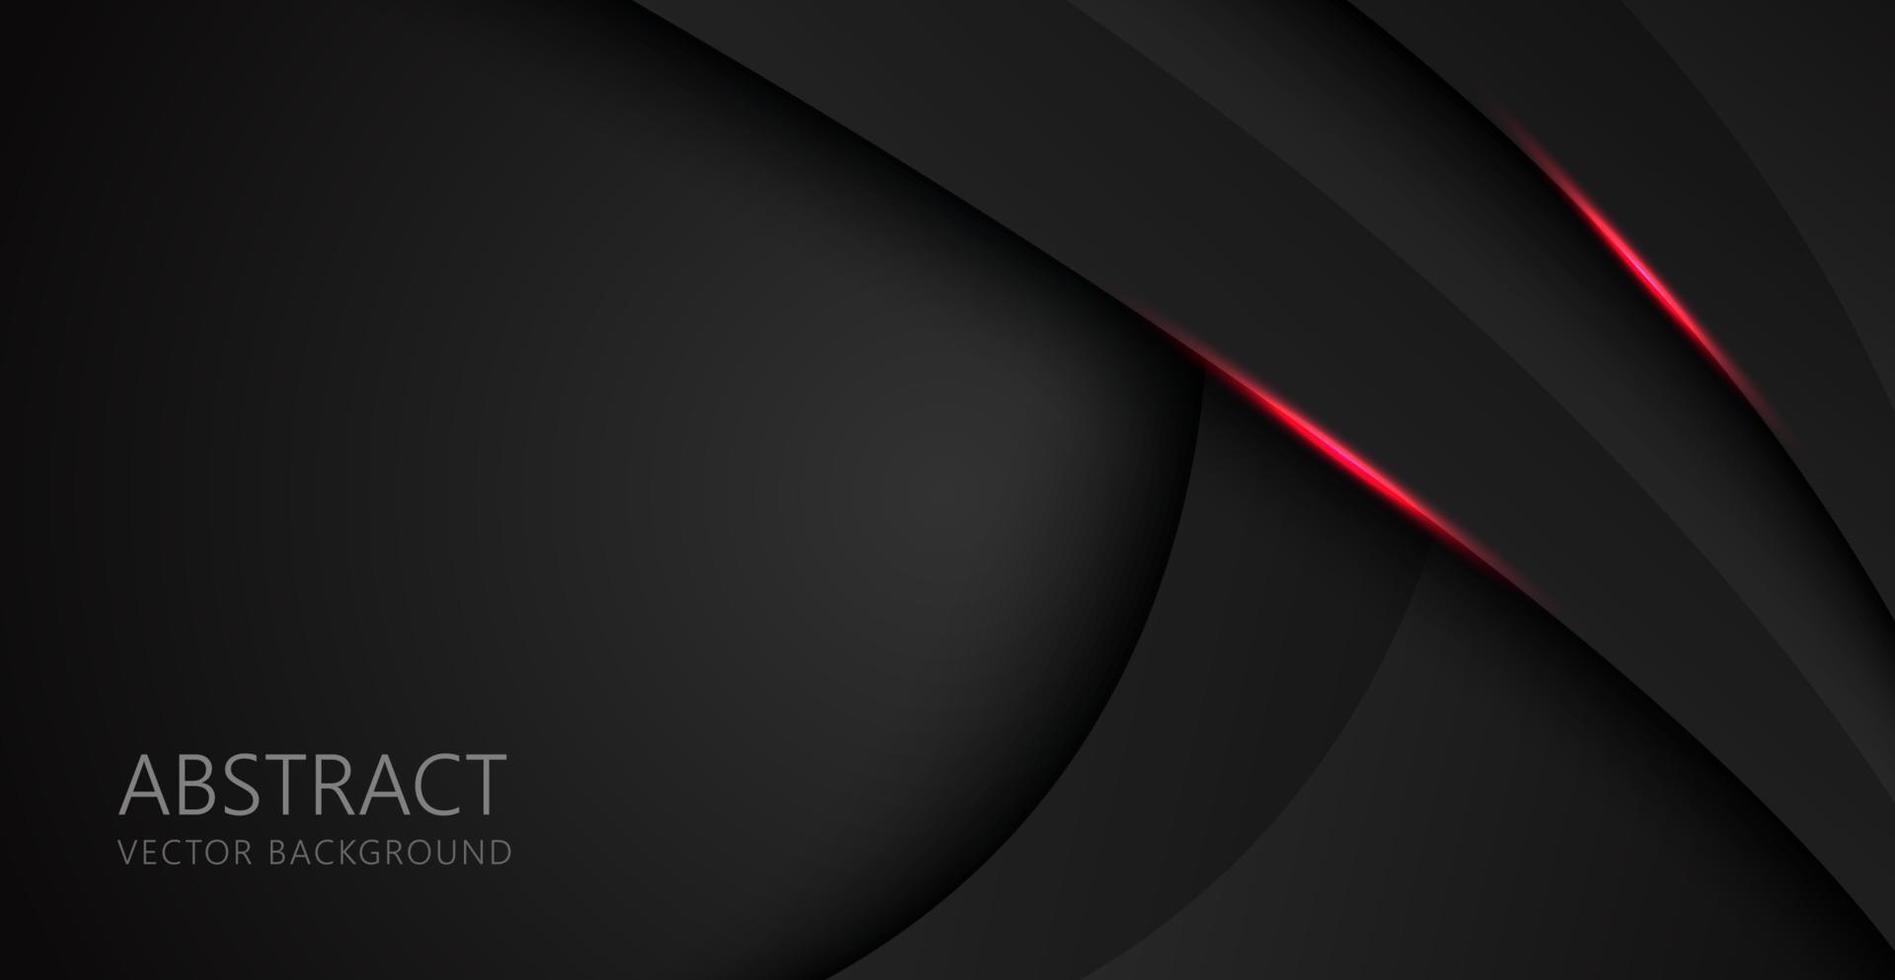 astratto rosso nero spazio cornice layout design tech triangolo concetto con esagono texture di sfondo. vettore eps10